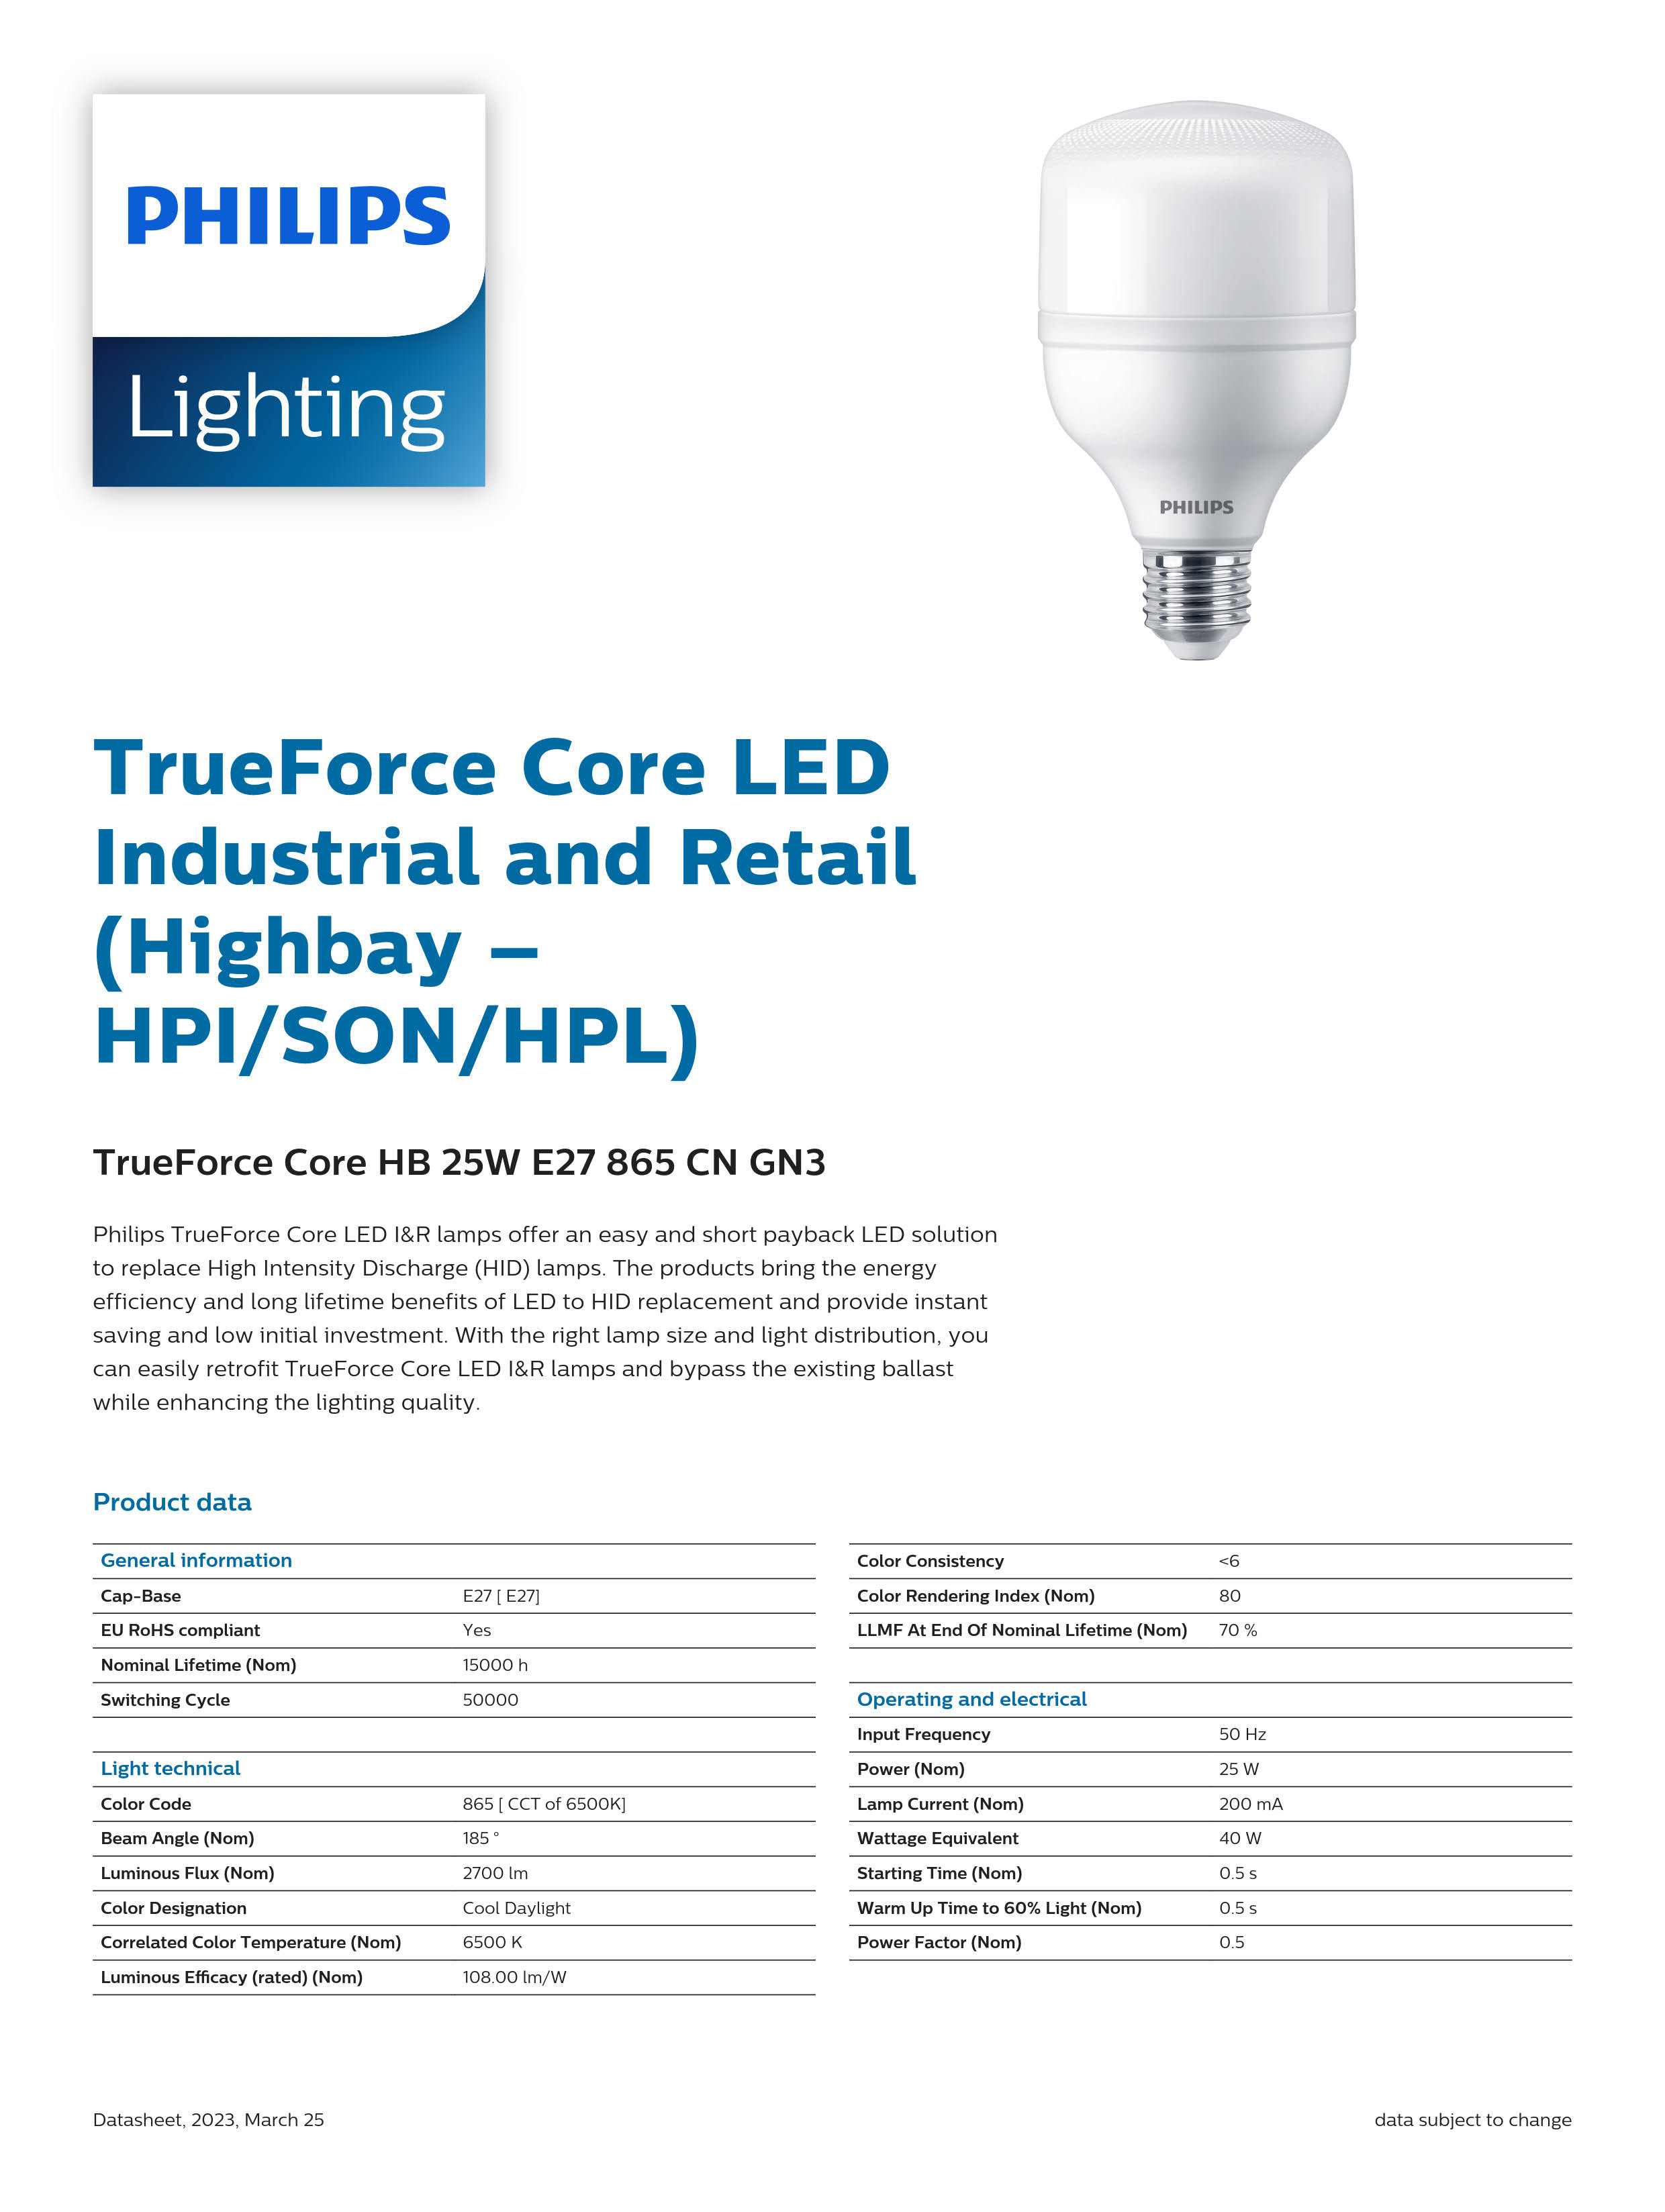 PHILIPS LED Bulb TrueForce Core HB 25W E27 865 CN GN3 29002408210